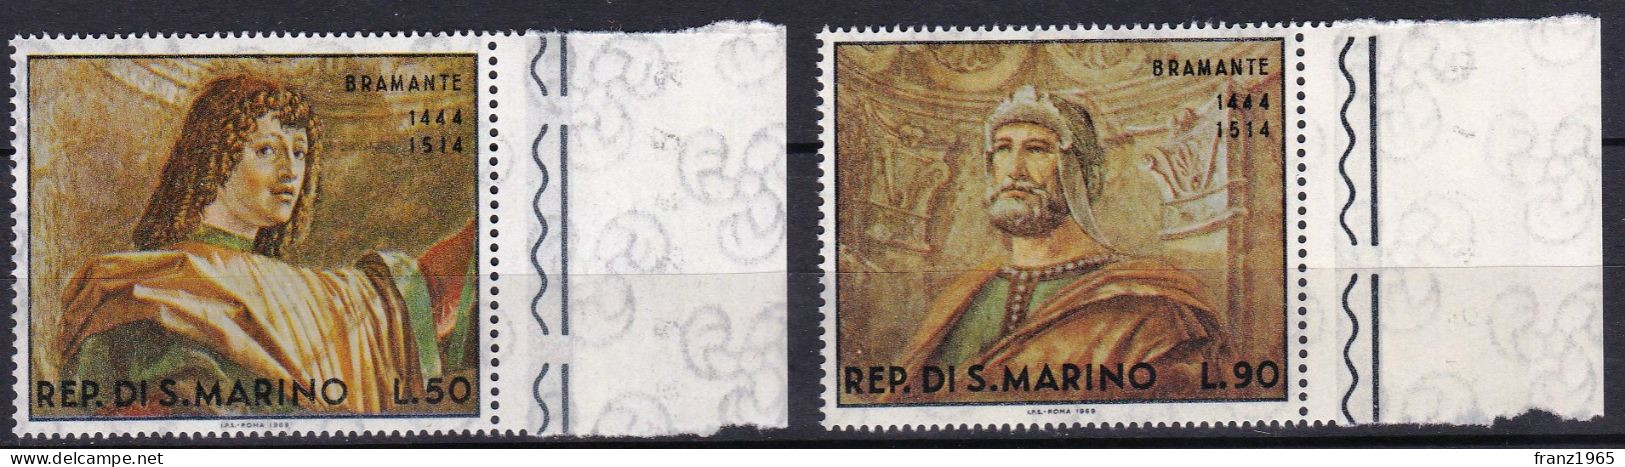 Bramante Paintings - 1969 - Unused Stamps